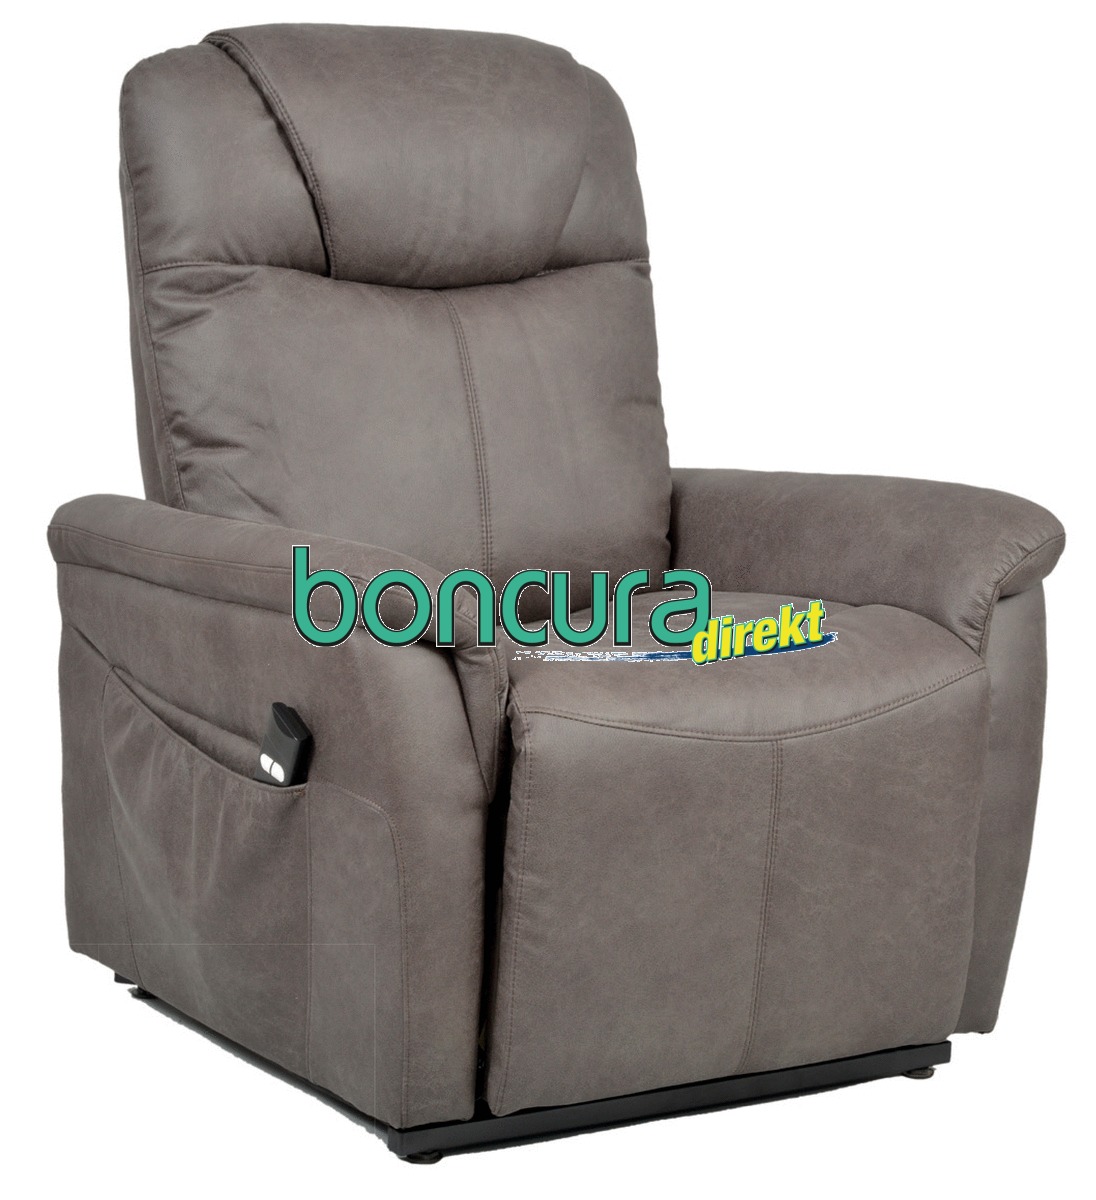 Aufstehsessel 2-motorig, Massage und Wärmefunktion Anschmiegsamer Sessel mit hohem Sitzkomfort